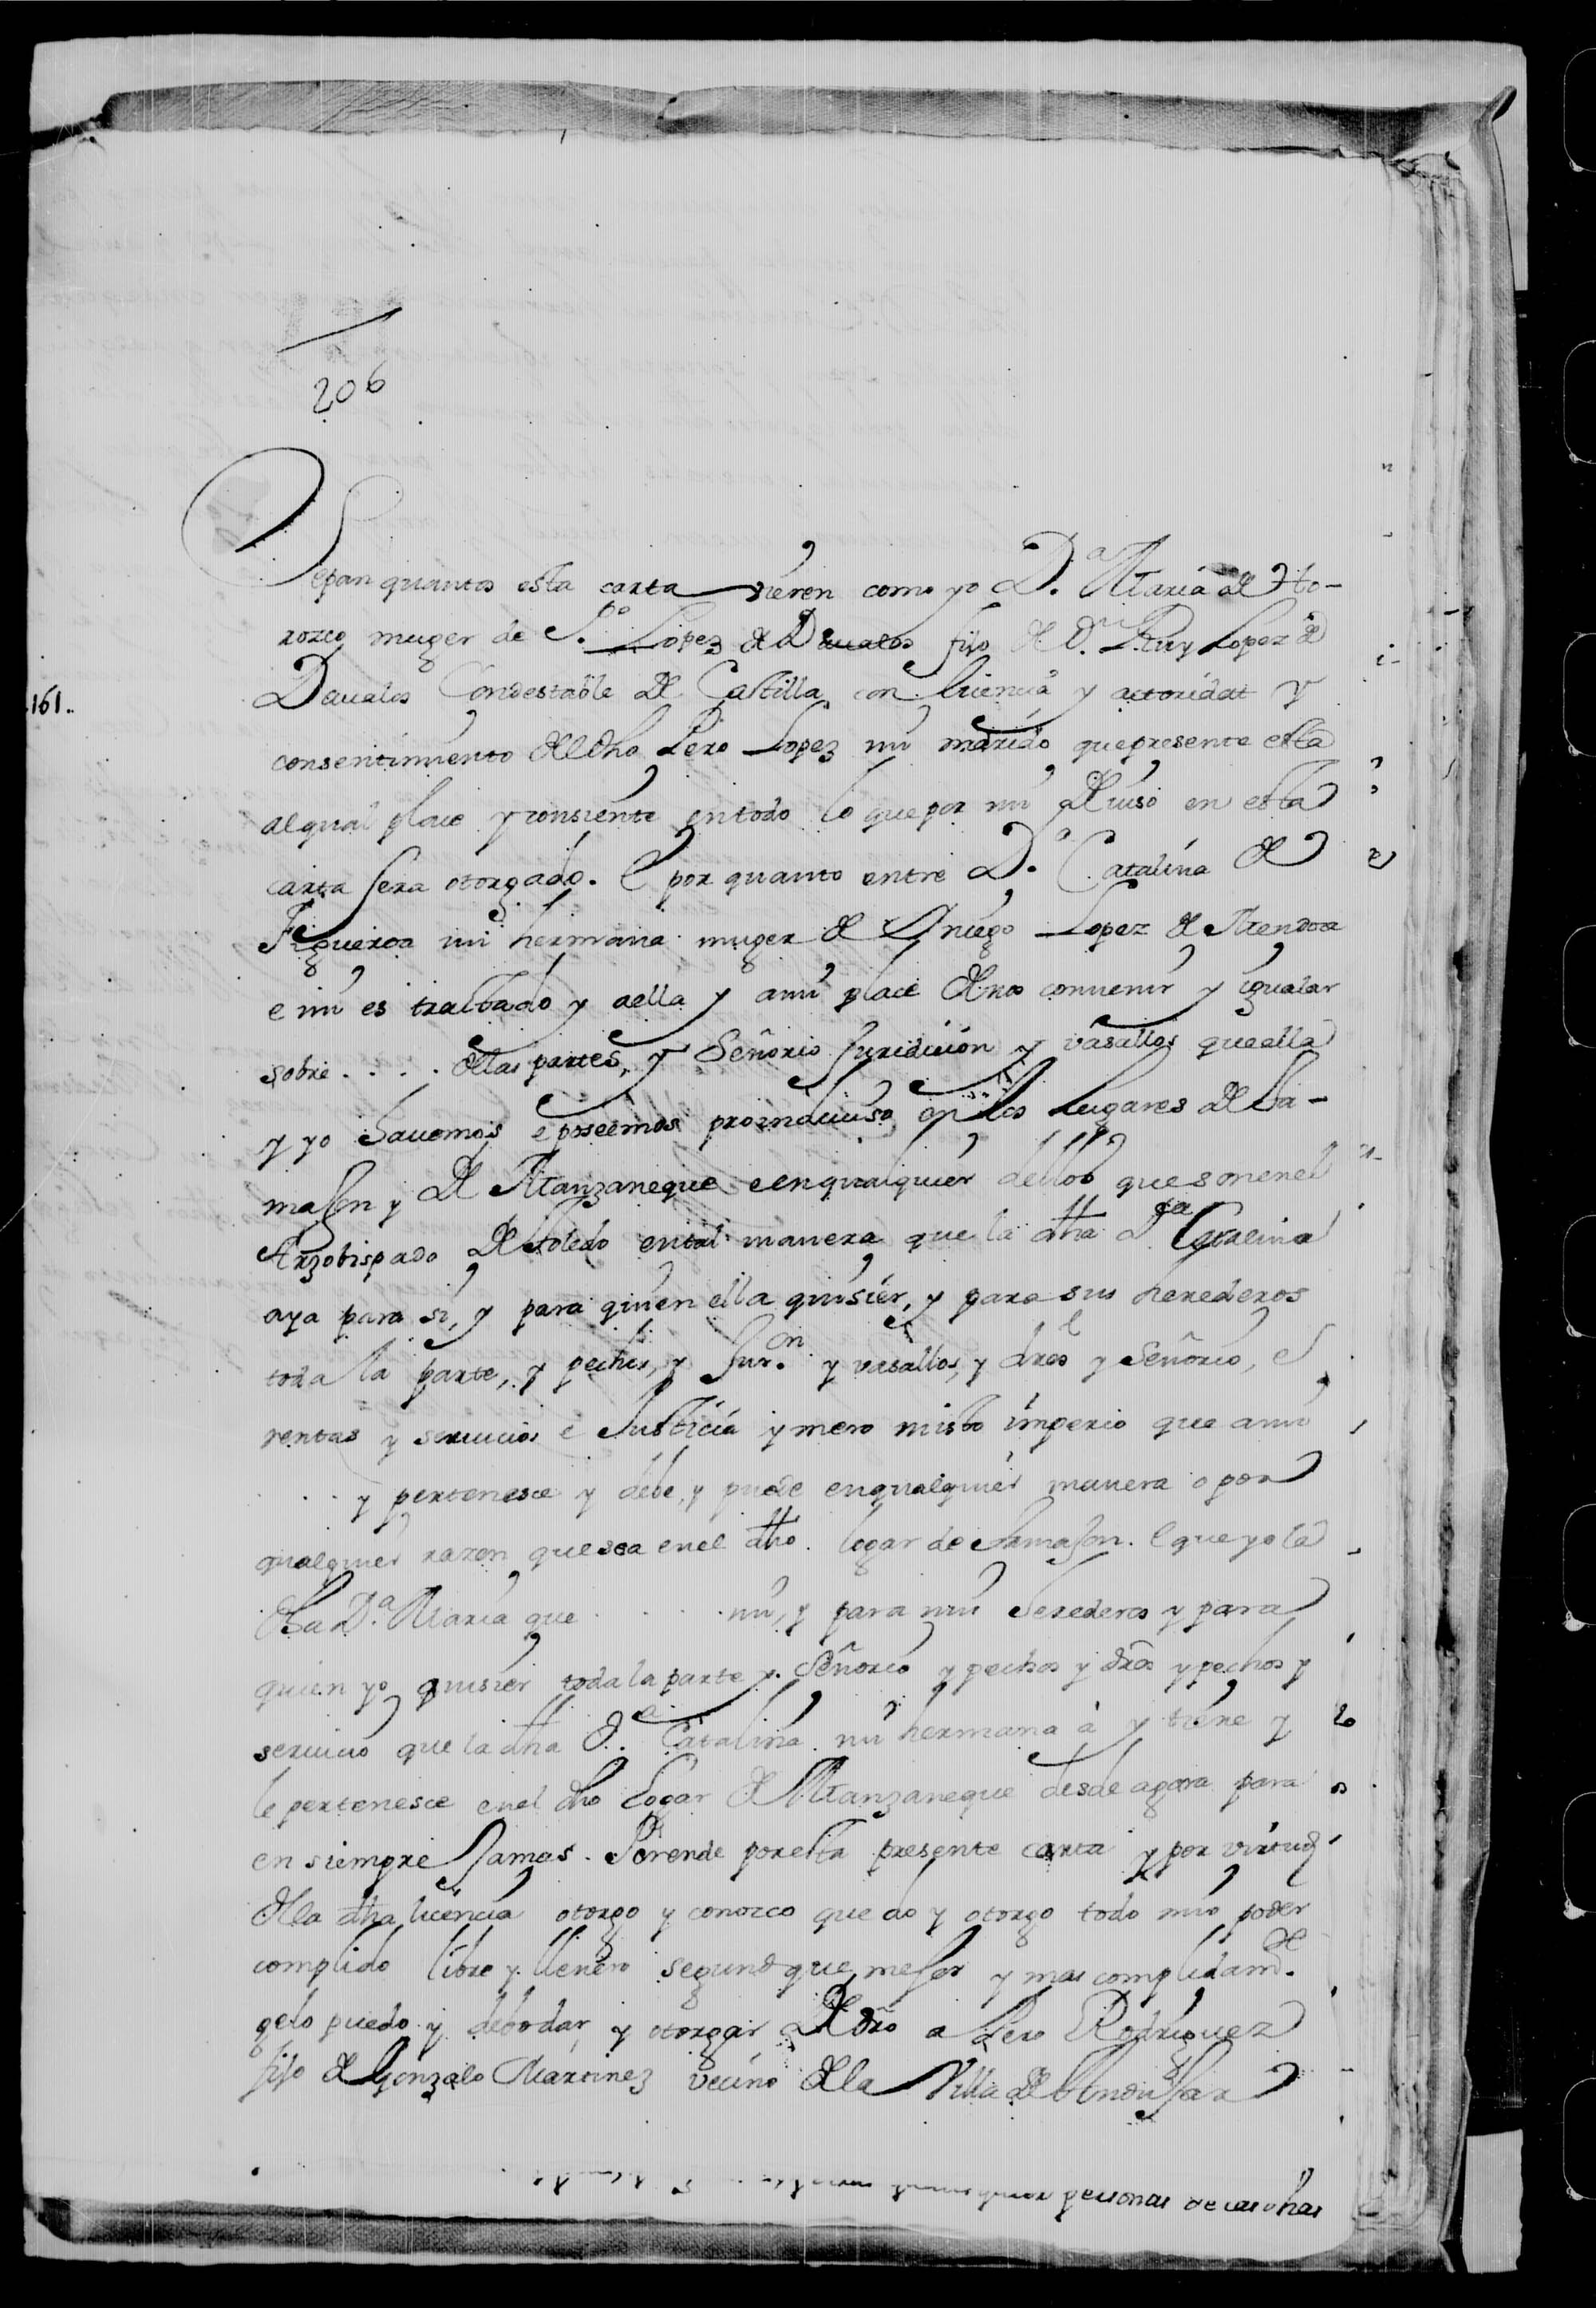 Carta de poder otorgada por María Orozco, a favor de Pedro Rodriguez, vecino de Andújar, para que trate con Catalina de Figueroa sobre unas villas que eran propiedad de los dos. 